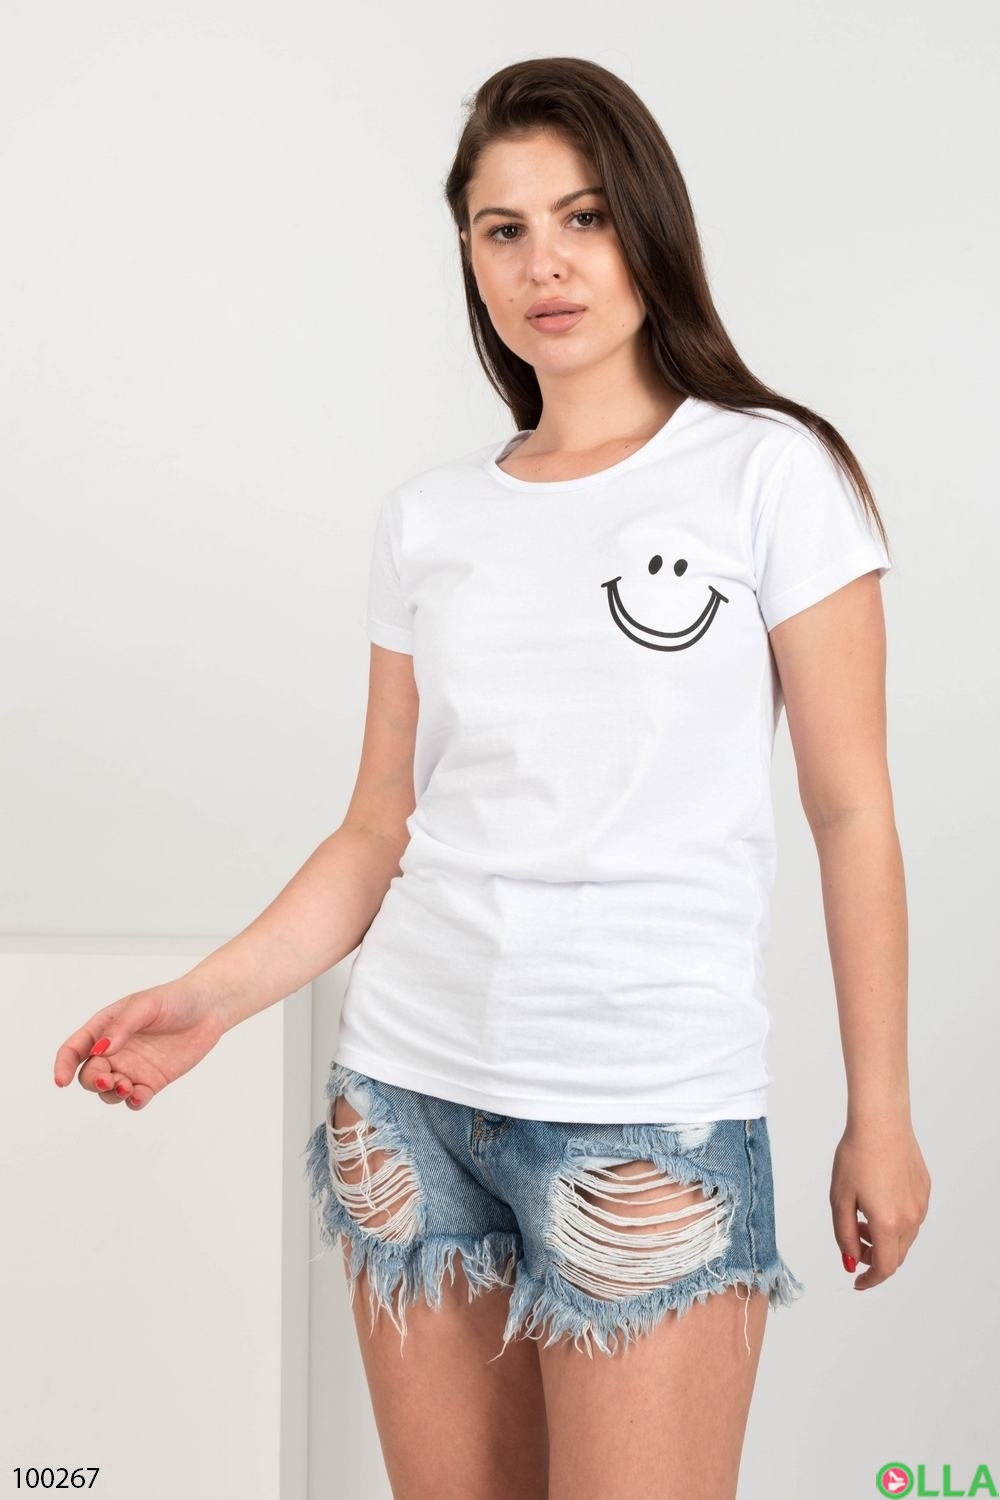 Жіноча біла футболка з малюнком